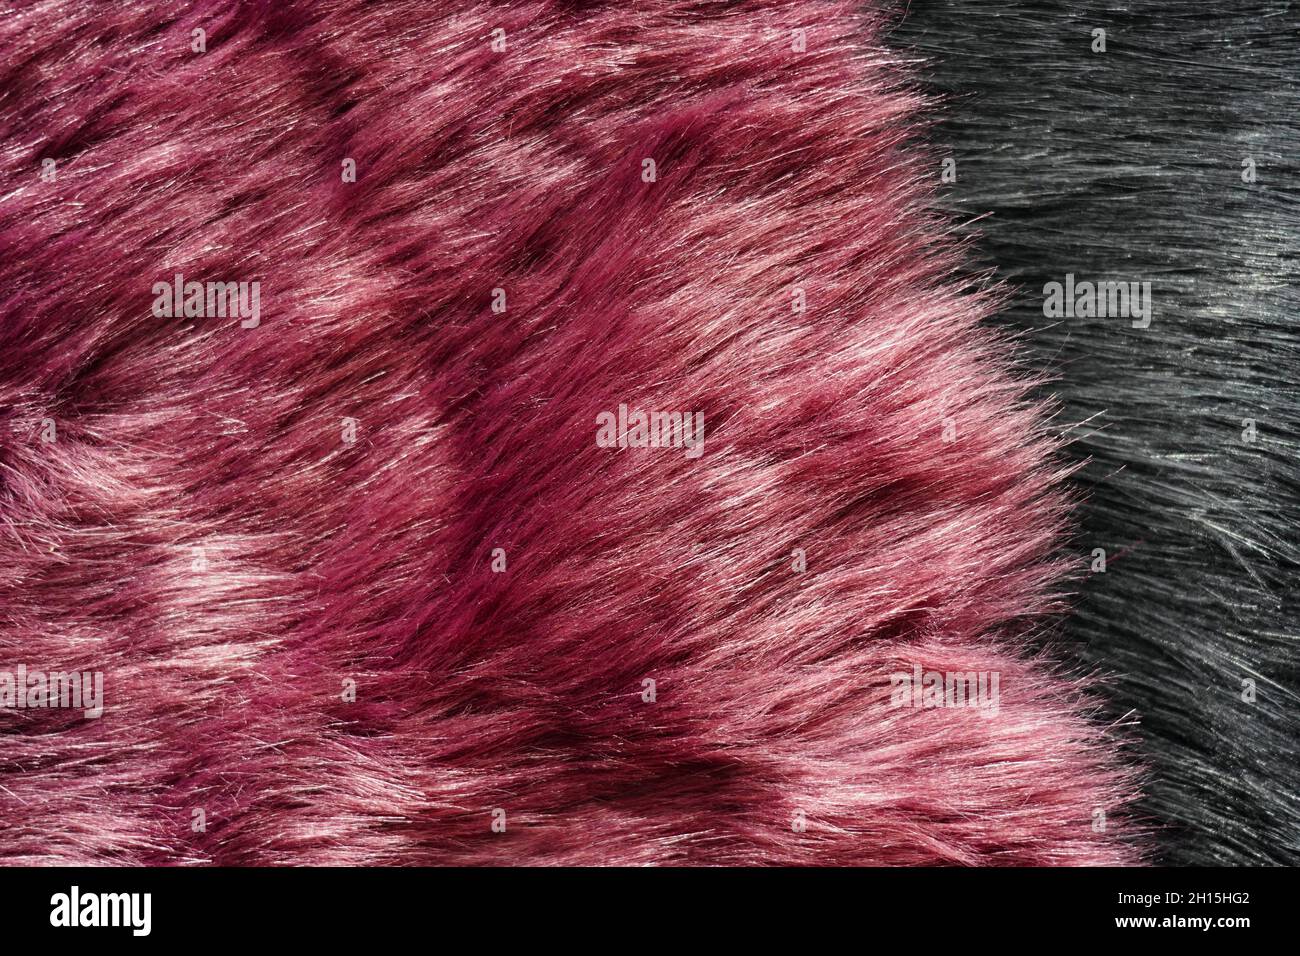 Sfondo rosa scuro finta immagini e fotografie stock ad alta risoluzione -  Alamy